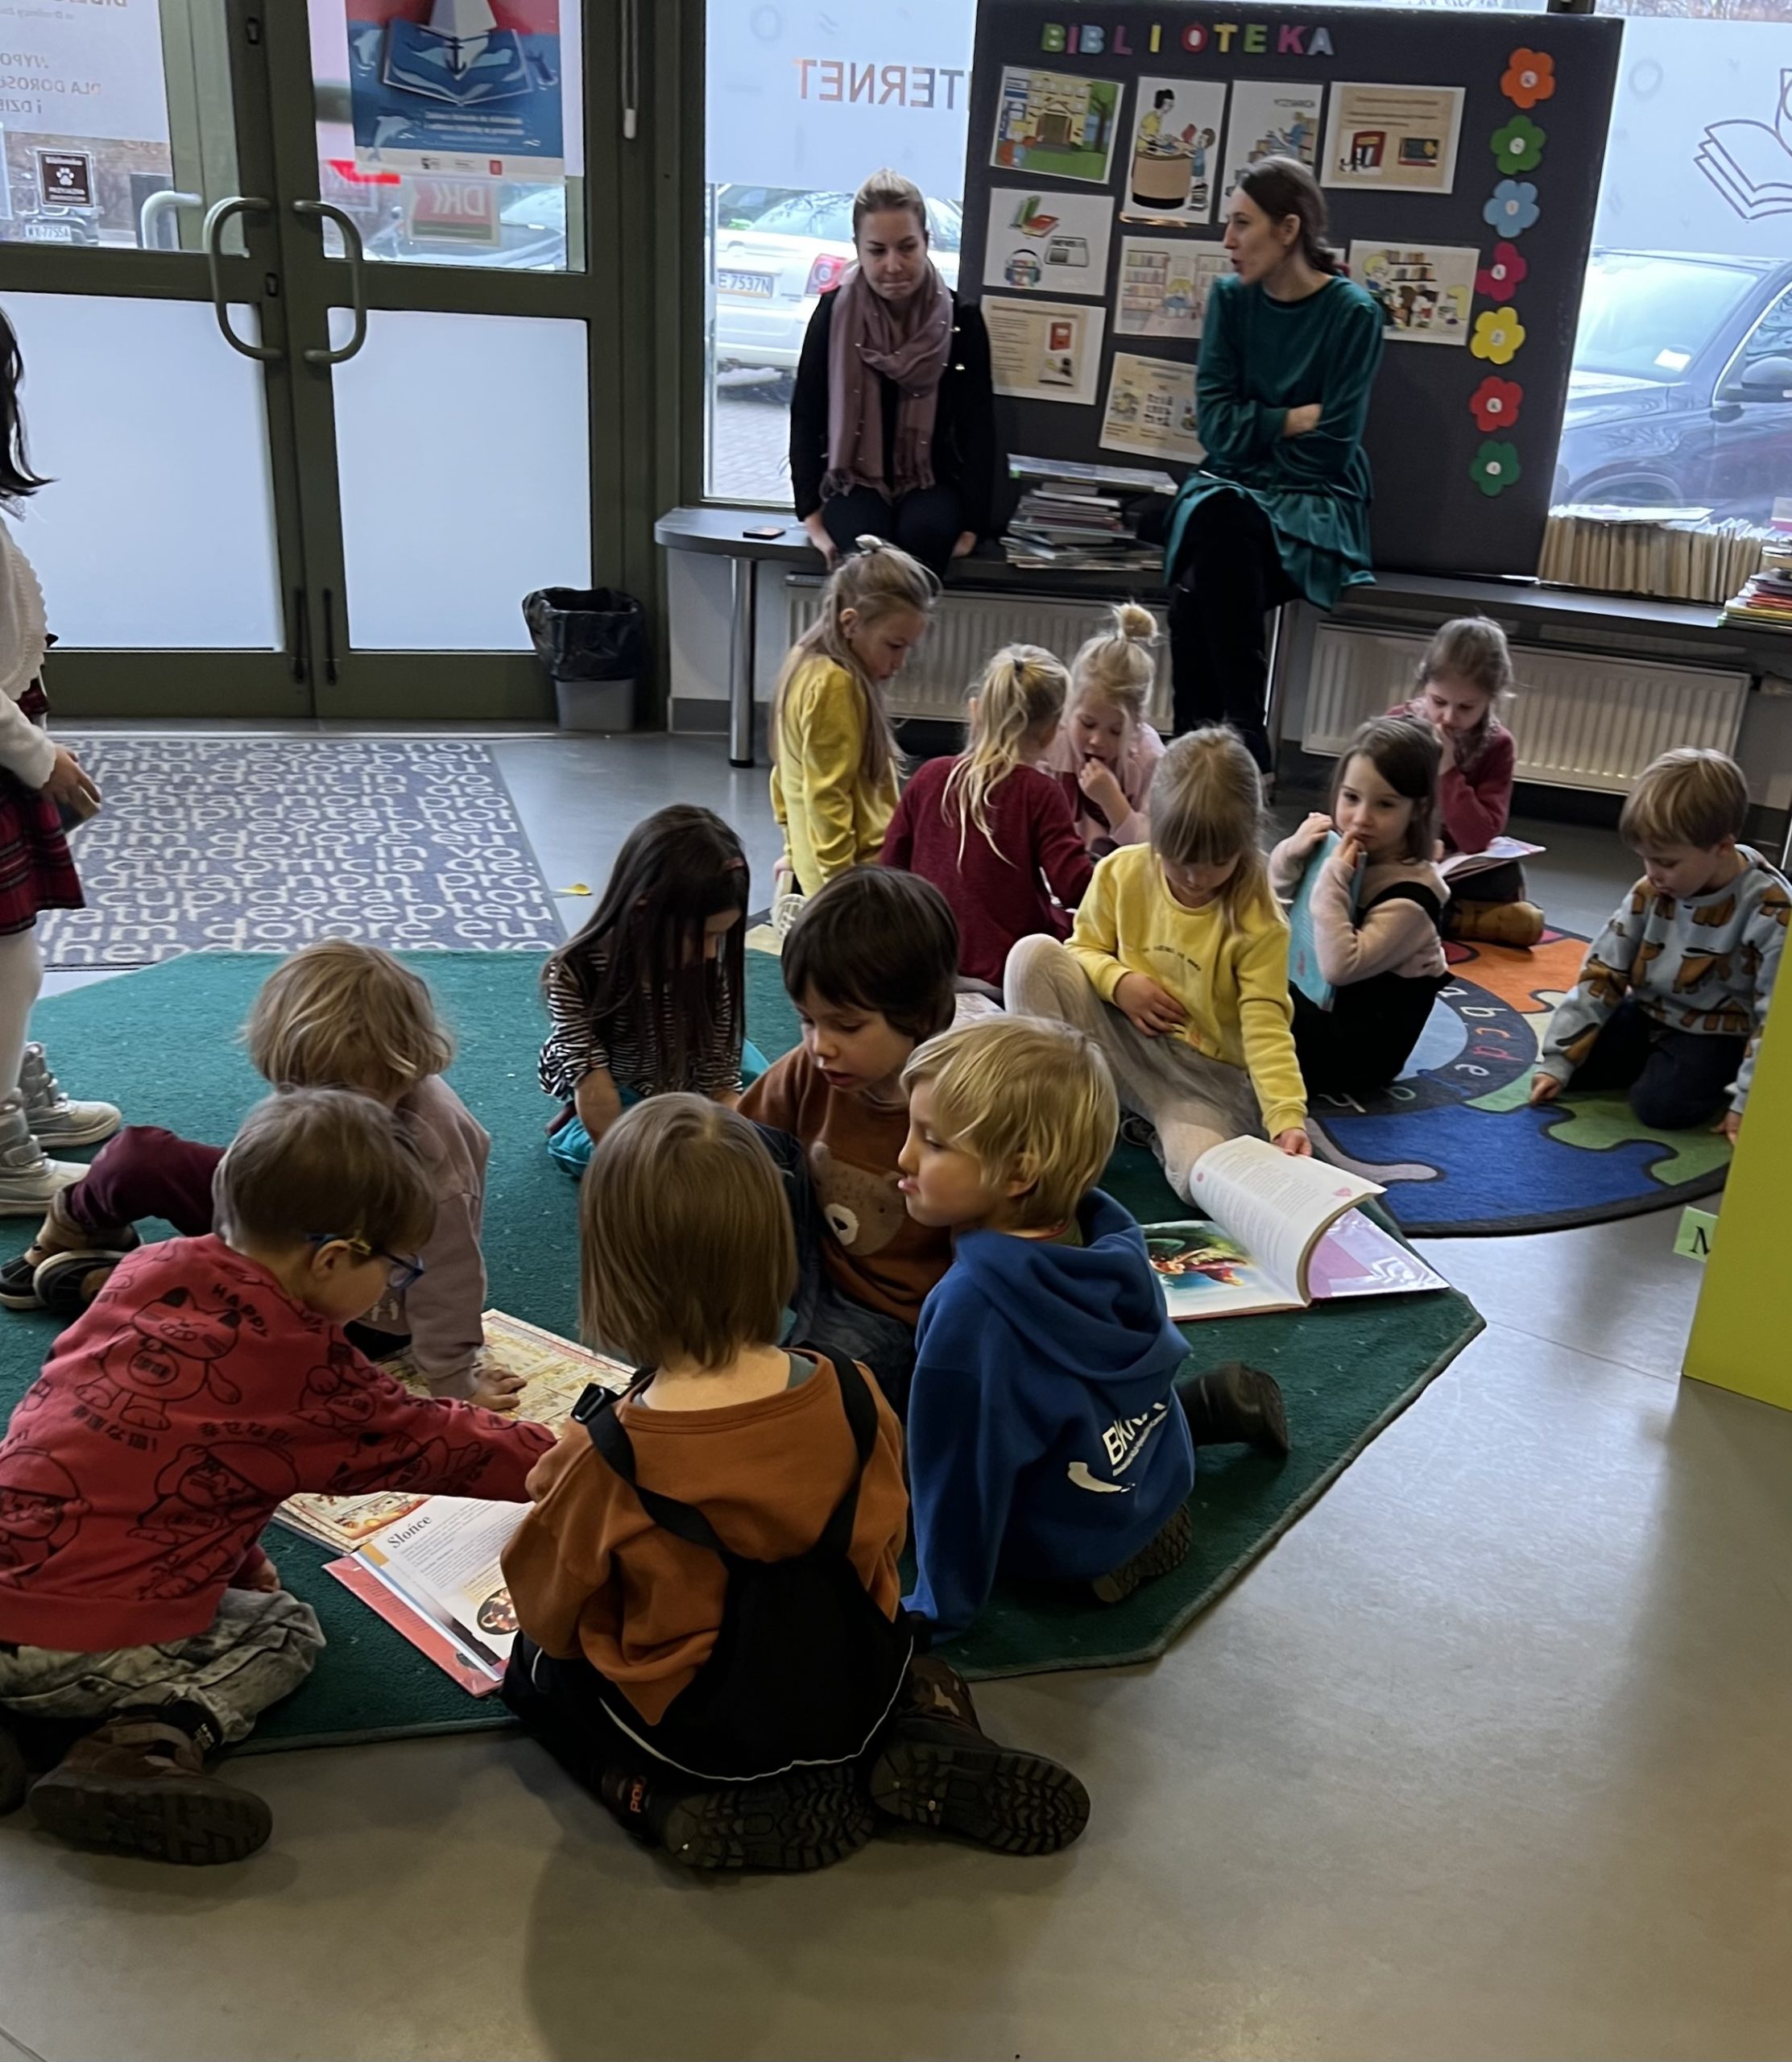 grupa dzieci siedzi na podłodze i ogląda książki, w tle dwie nauczycielki siedzą przy tablicy, na której wiszą kolorowe plansze